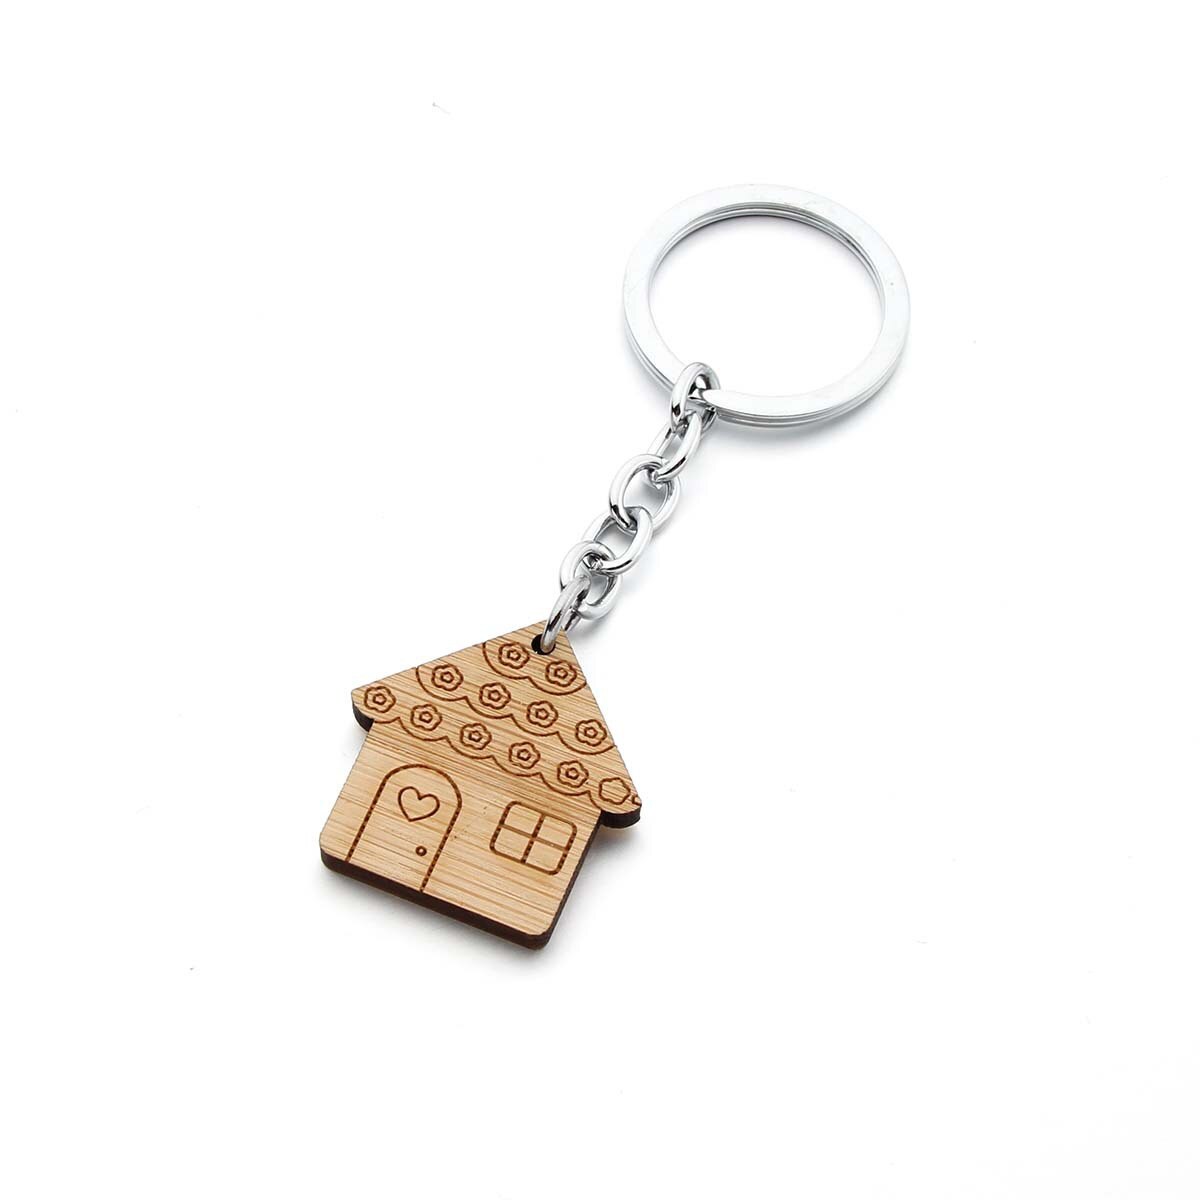 Aktuelt tilgængeligt salg nøgle spænde træ nøglering nøgle spænde hjem hus træ nøgle træ nøgle spænde nøgle spænde nøgle